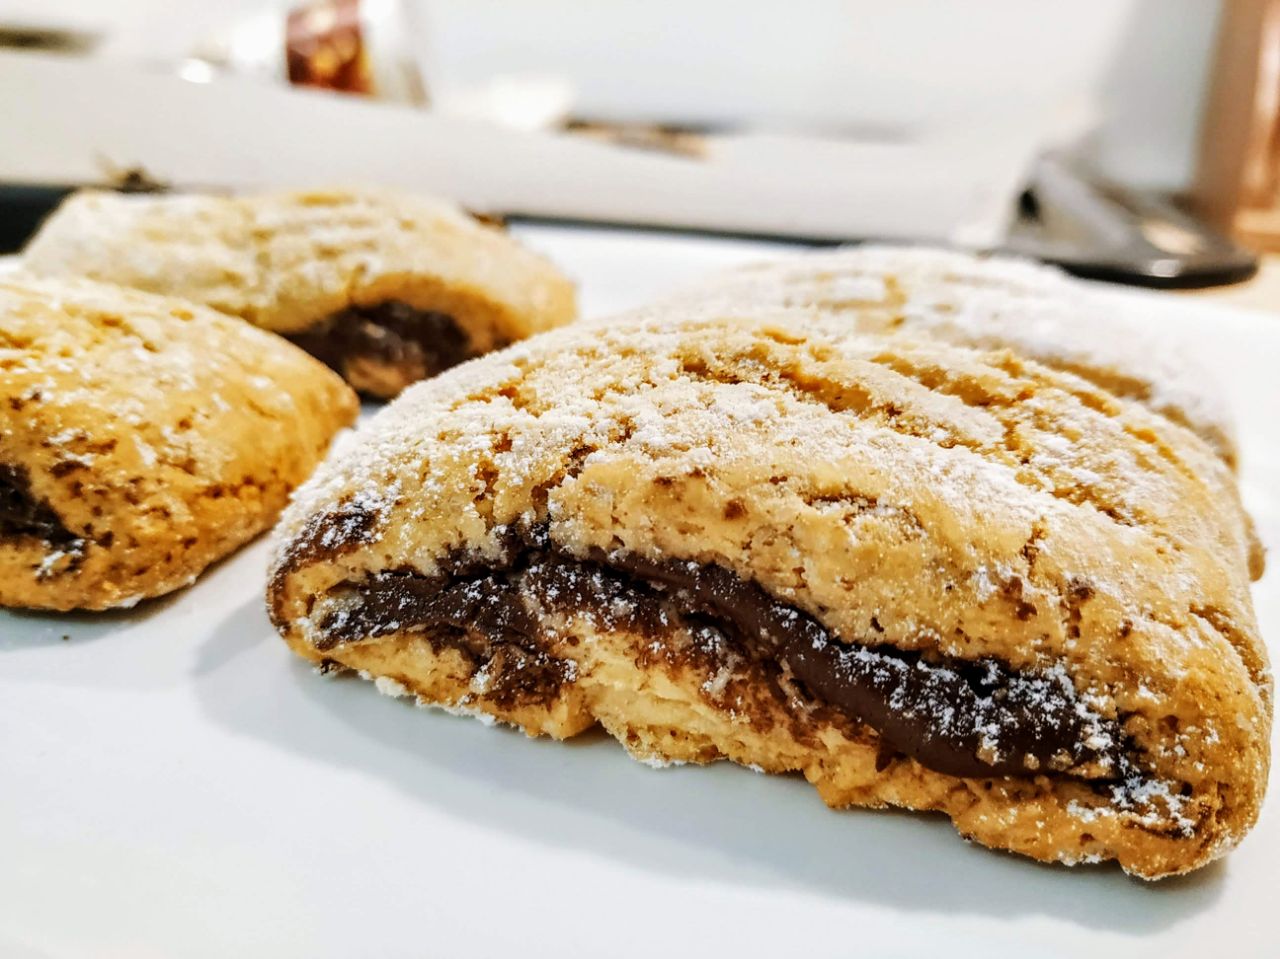 Dolci semplici e veloci senza burro: biscotti nascondini con crema alle nocciole zucchero di canna e olio evo!